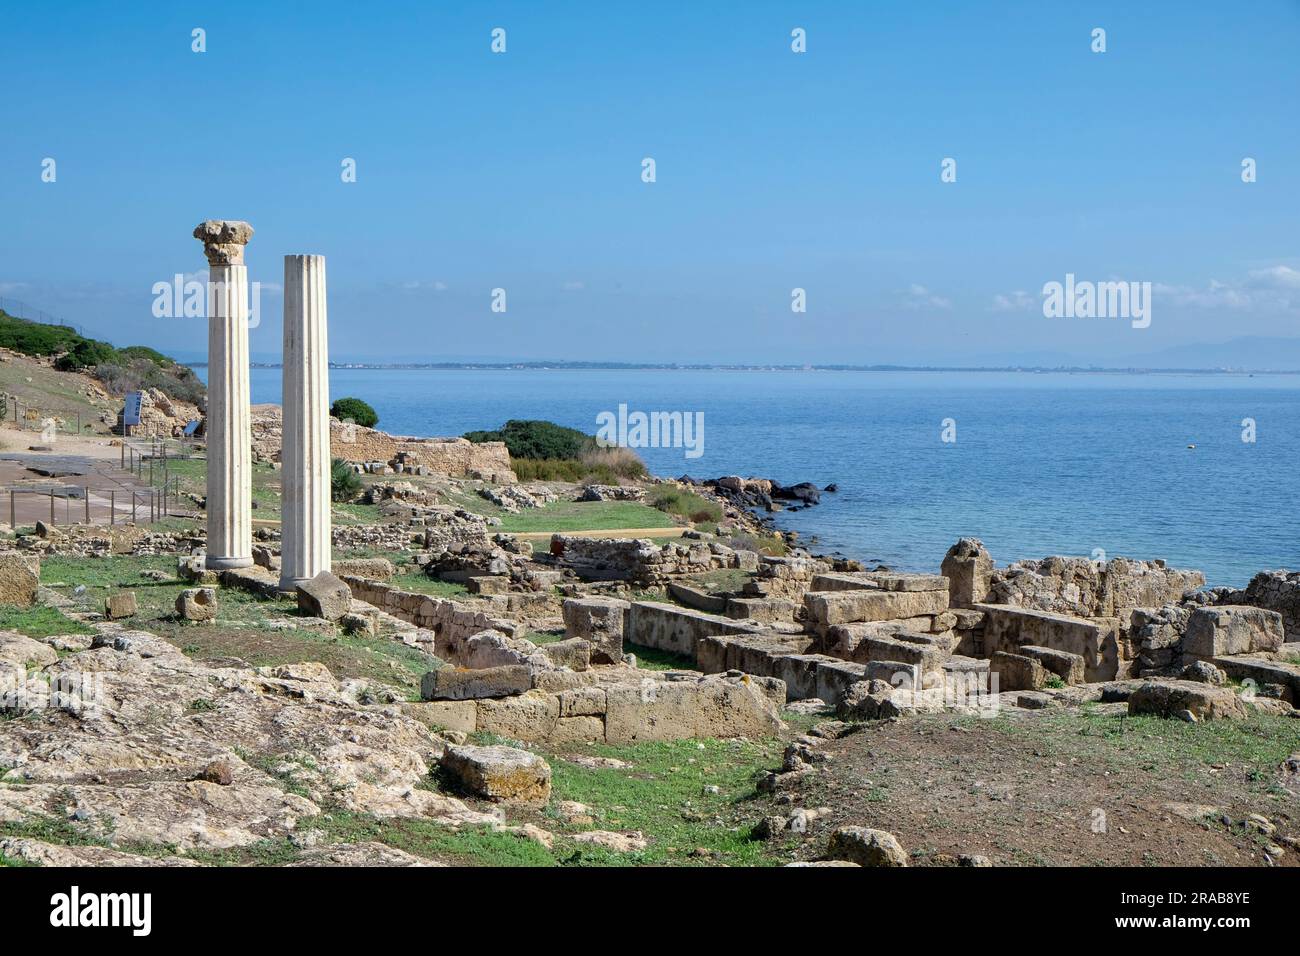 Sito archeologico di Tharros e colonne doriche di Tempio Tetrastilo con vista sul mar mediterraneo, sulla penisola del Sinis, Carbra, Sardegna, Italia Foto Stock